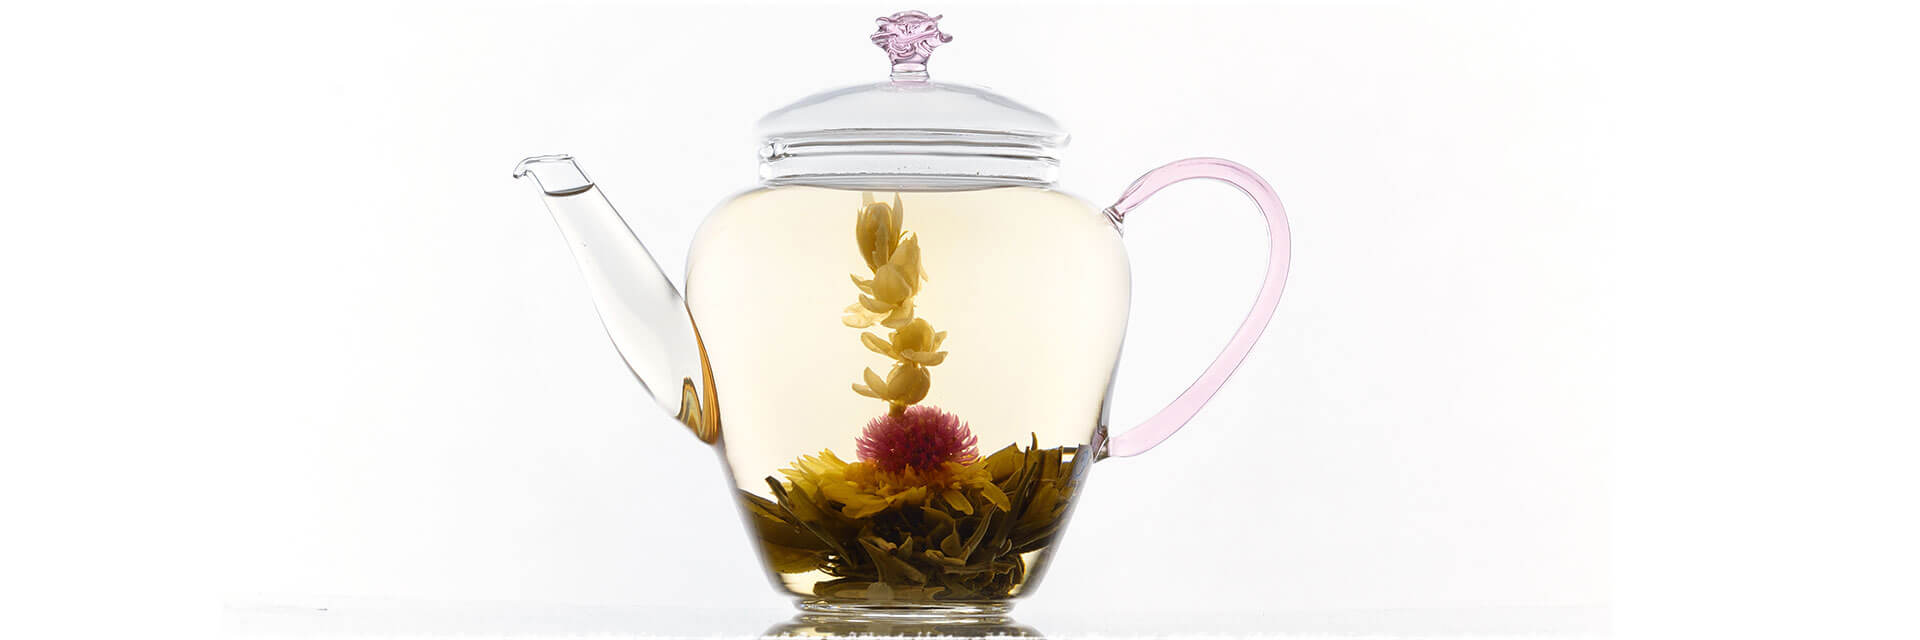 Craft of Making Flowering Tea (Blooming Tea)